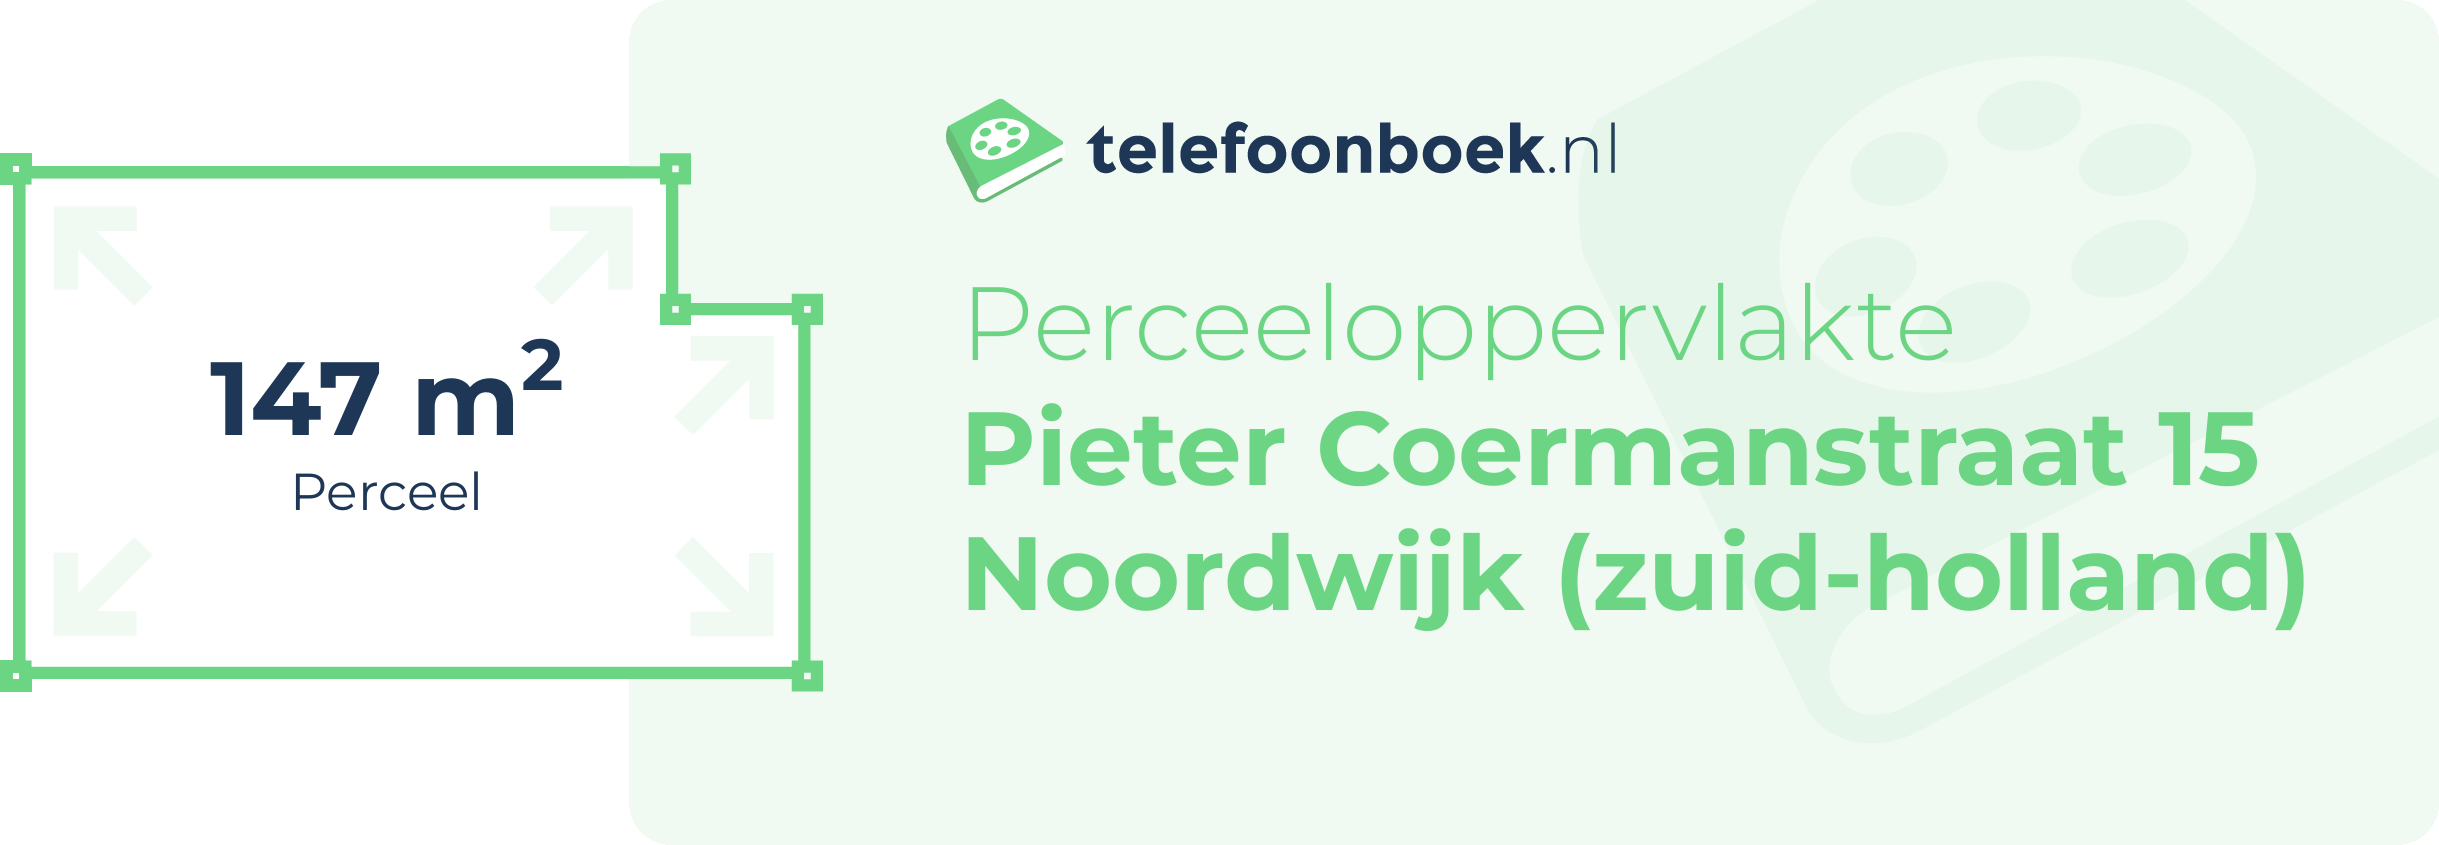 Perceeloppervlakte Pieter Coermanstraat 15 Noordwijk (Zuid-Holland)